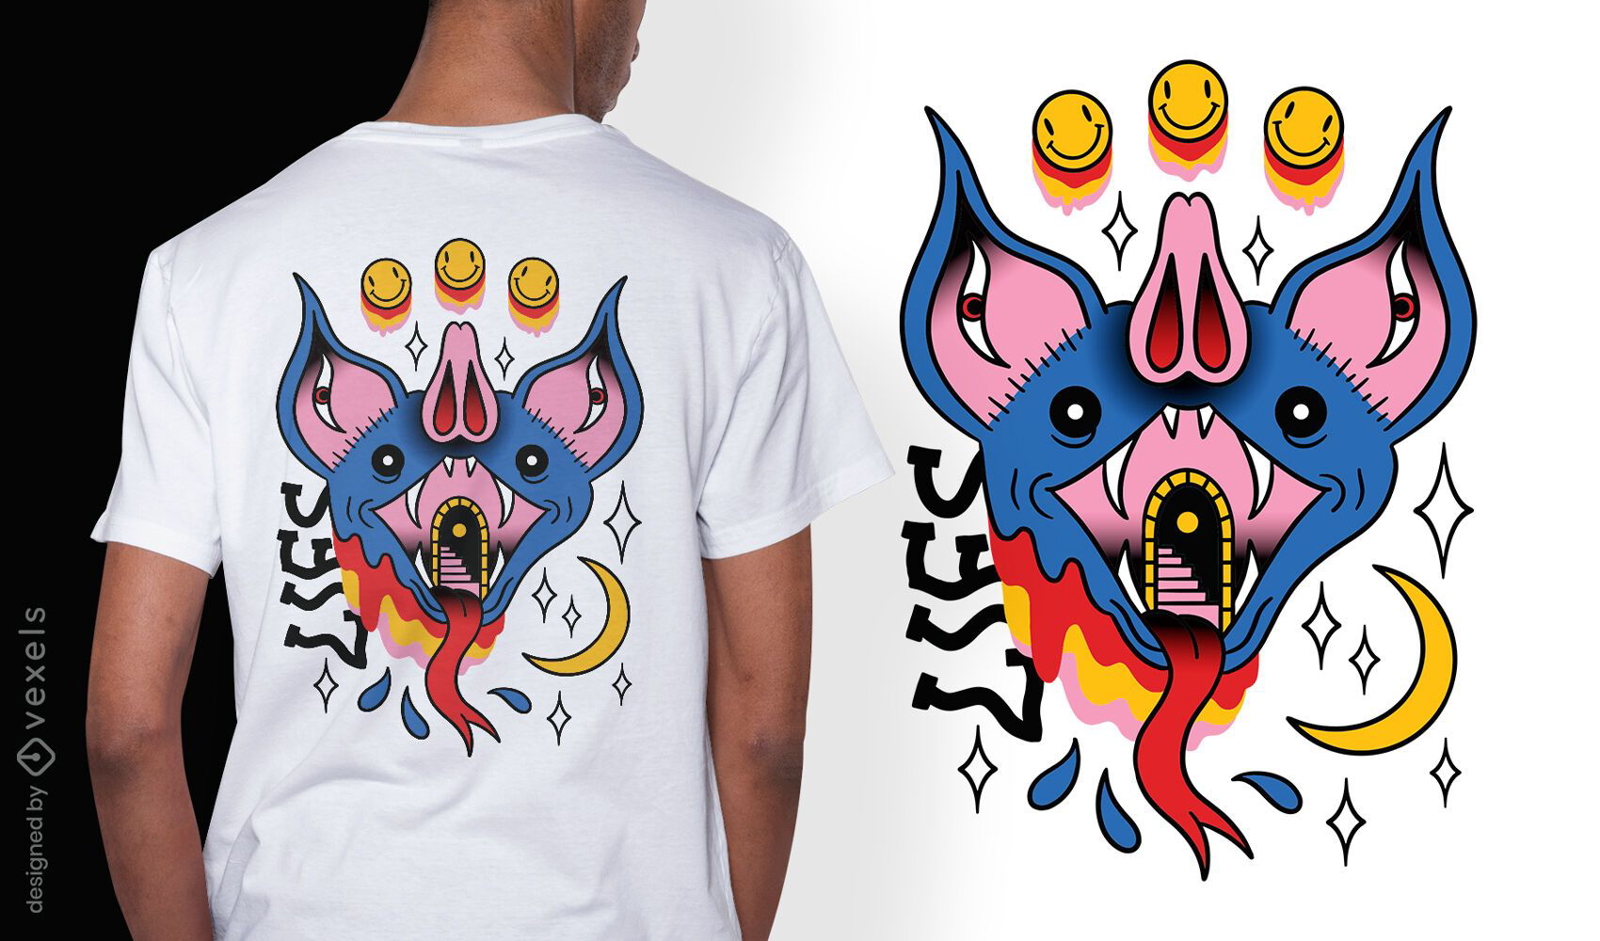 Trippy bat tattoo diseño de camiseta surrealista